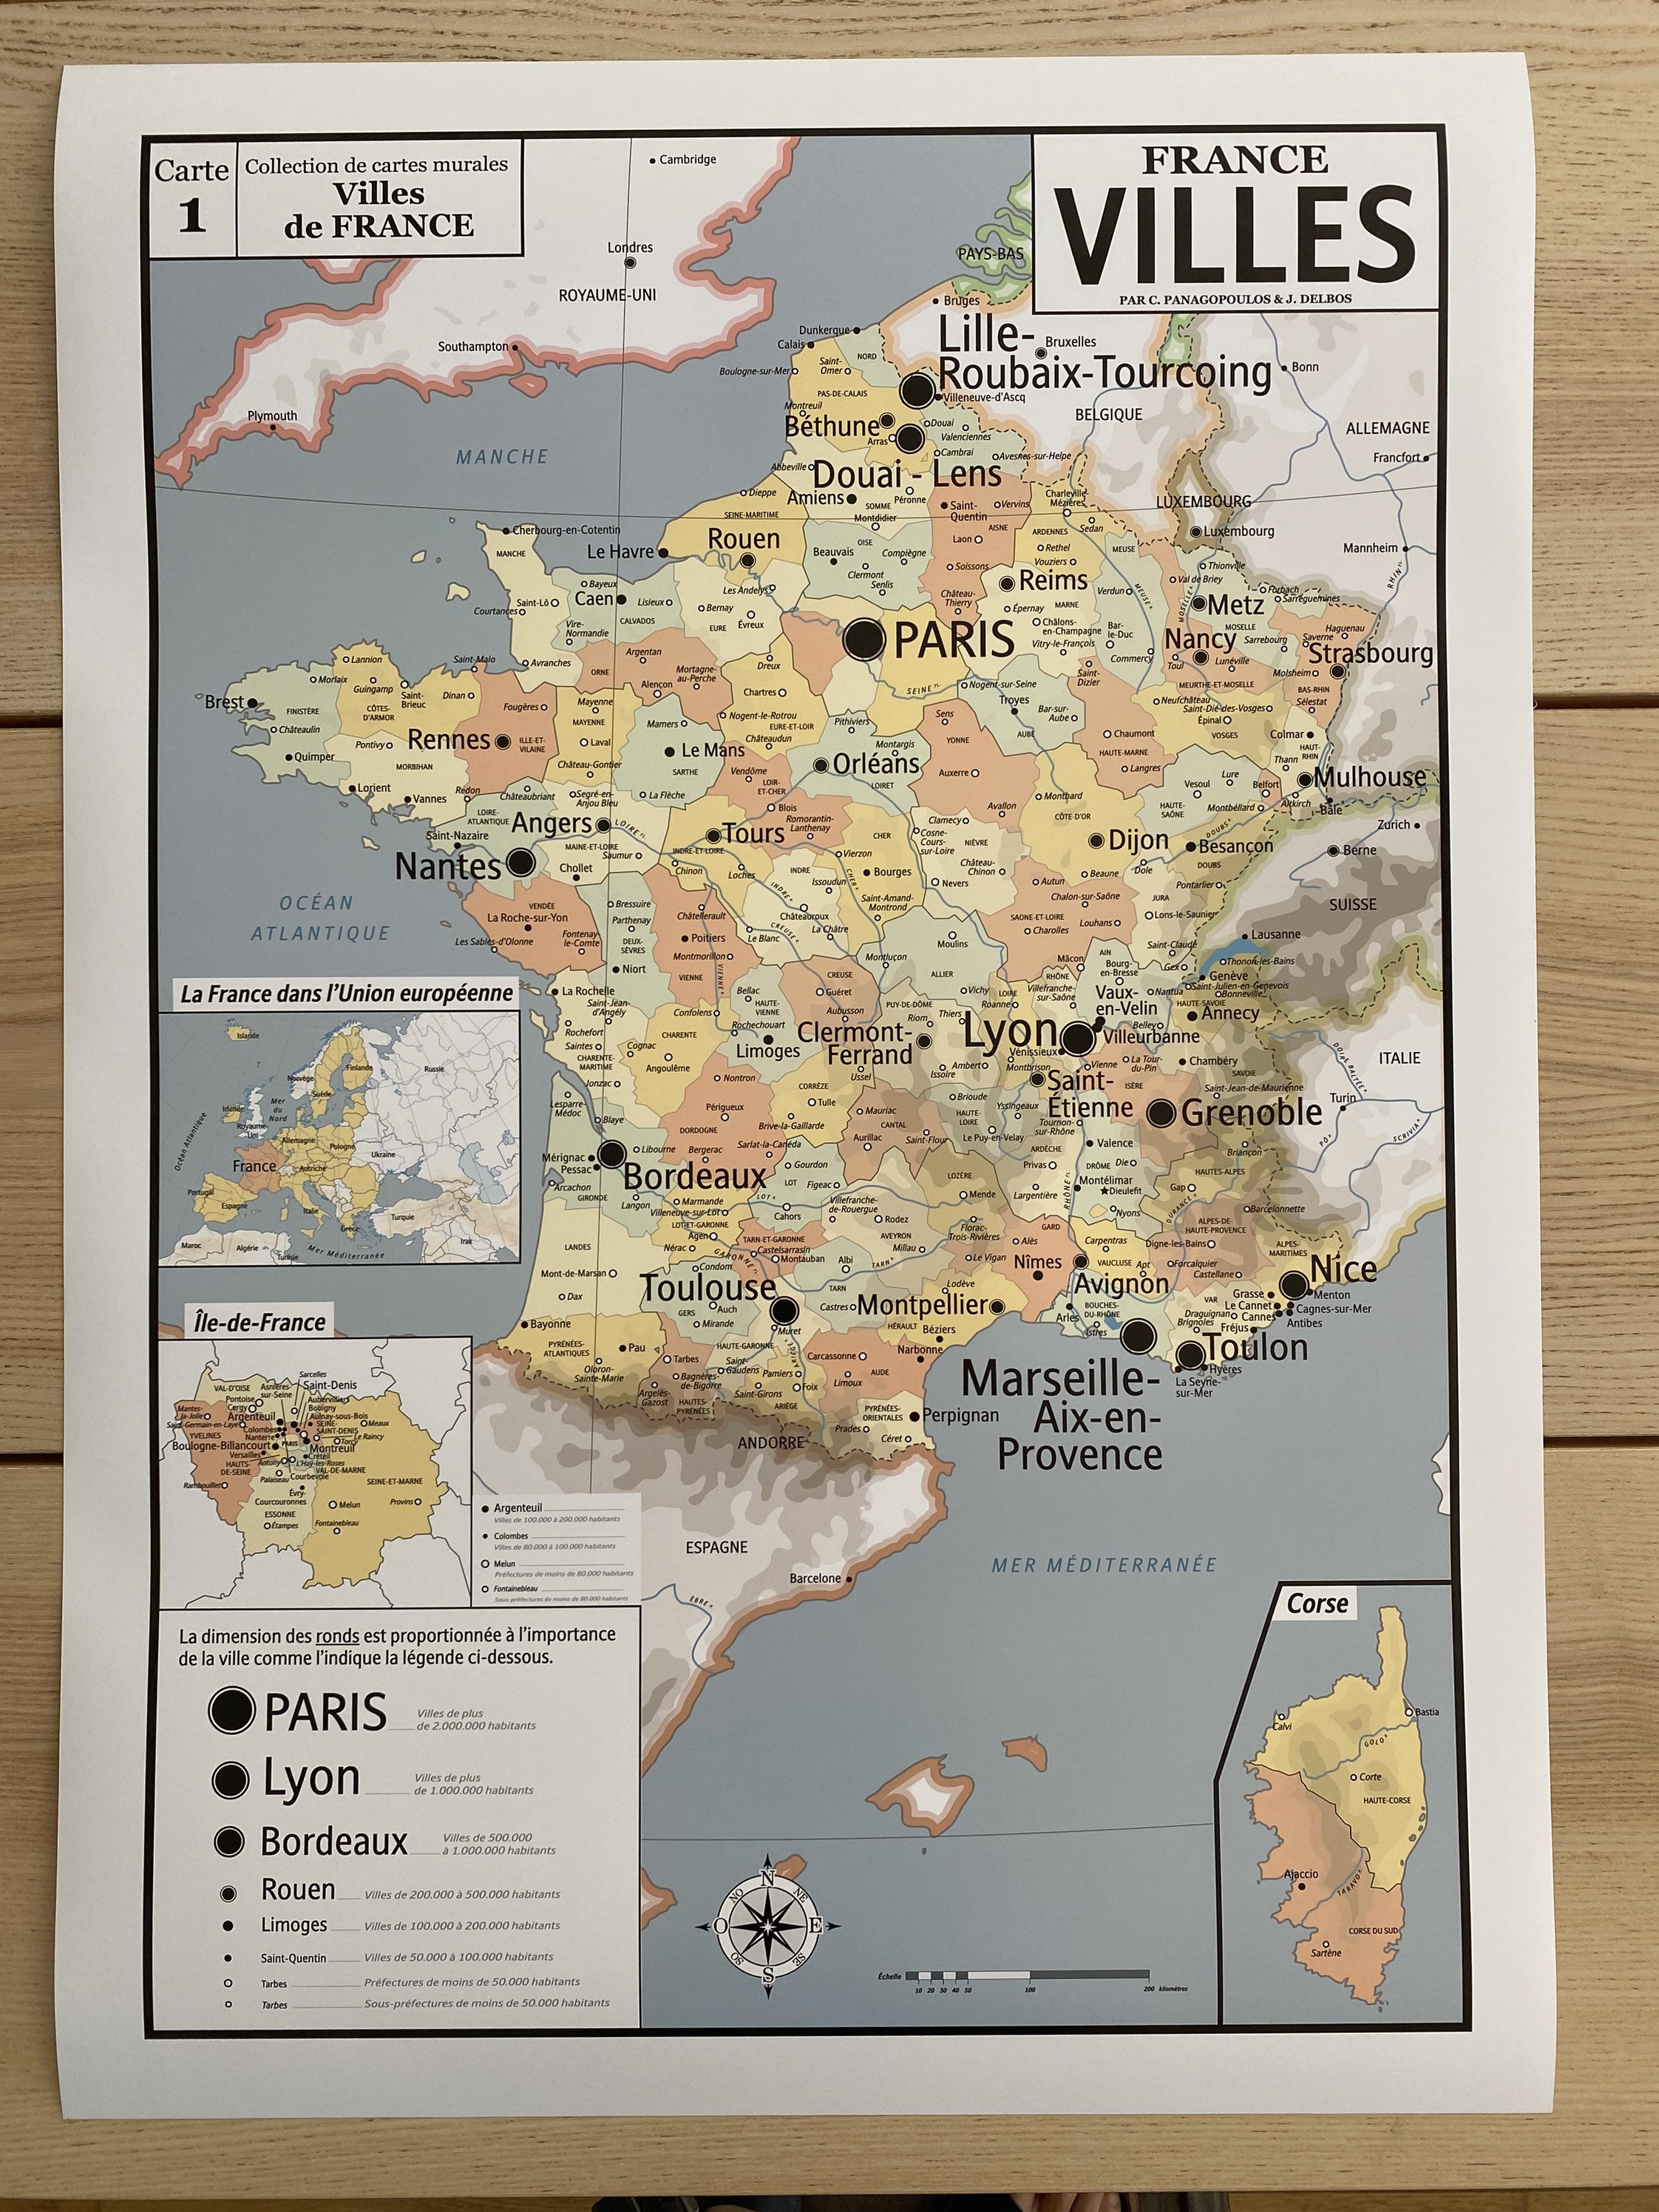 JOLIES PLANCHES Carte de France vintage avec illustration des départem